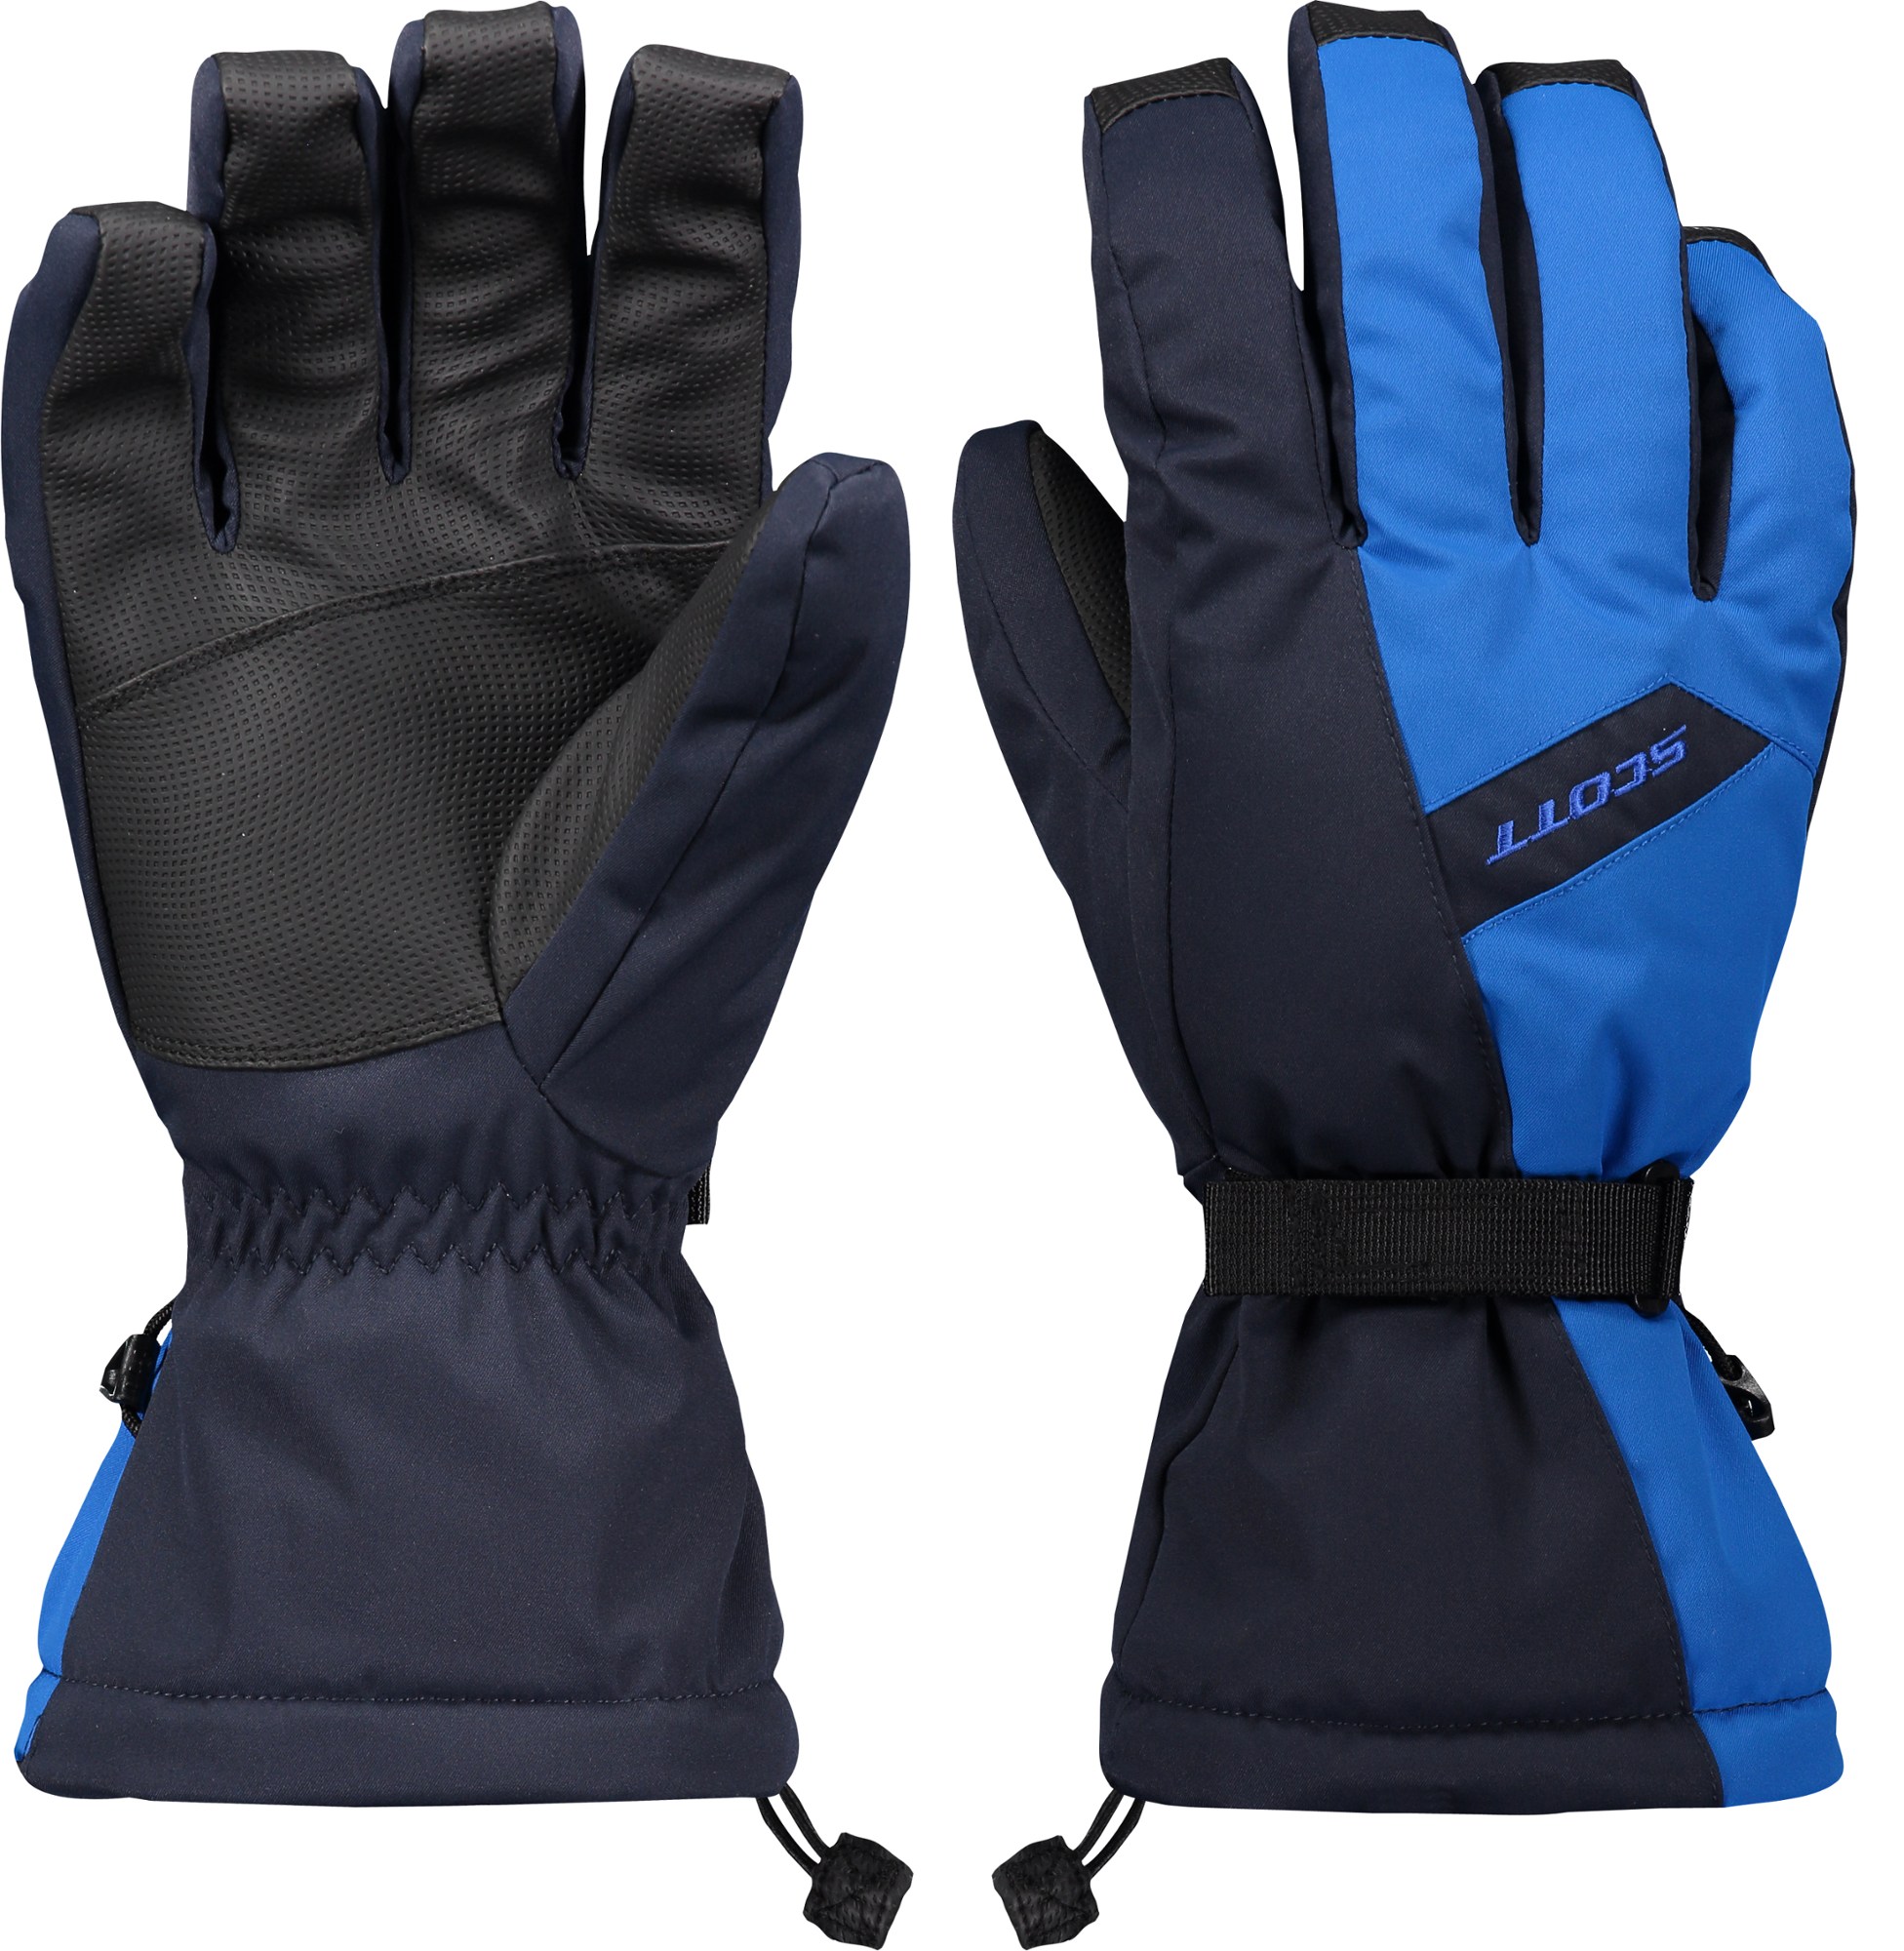 Ultimate Warm перчатки – мужские Scott, синий безопасный обогреватель для шеи в холодную погоду флисовая фотомаска бандана для лица для катания на лыжах велоспорта сноуборда пешего